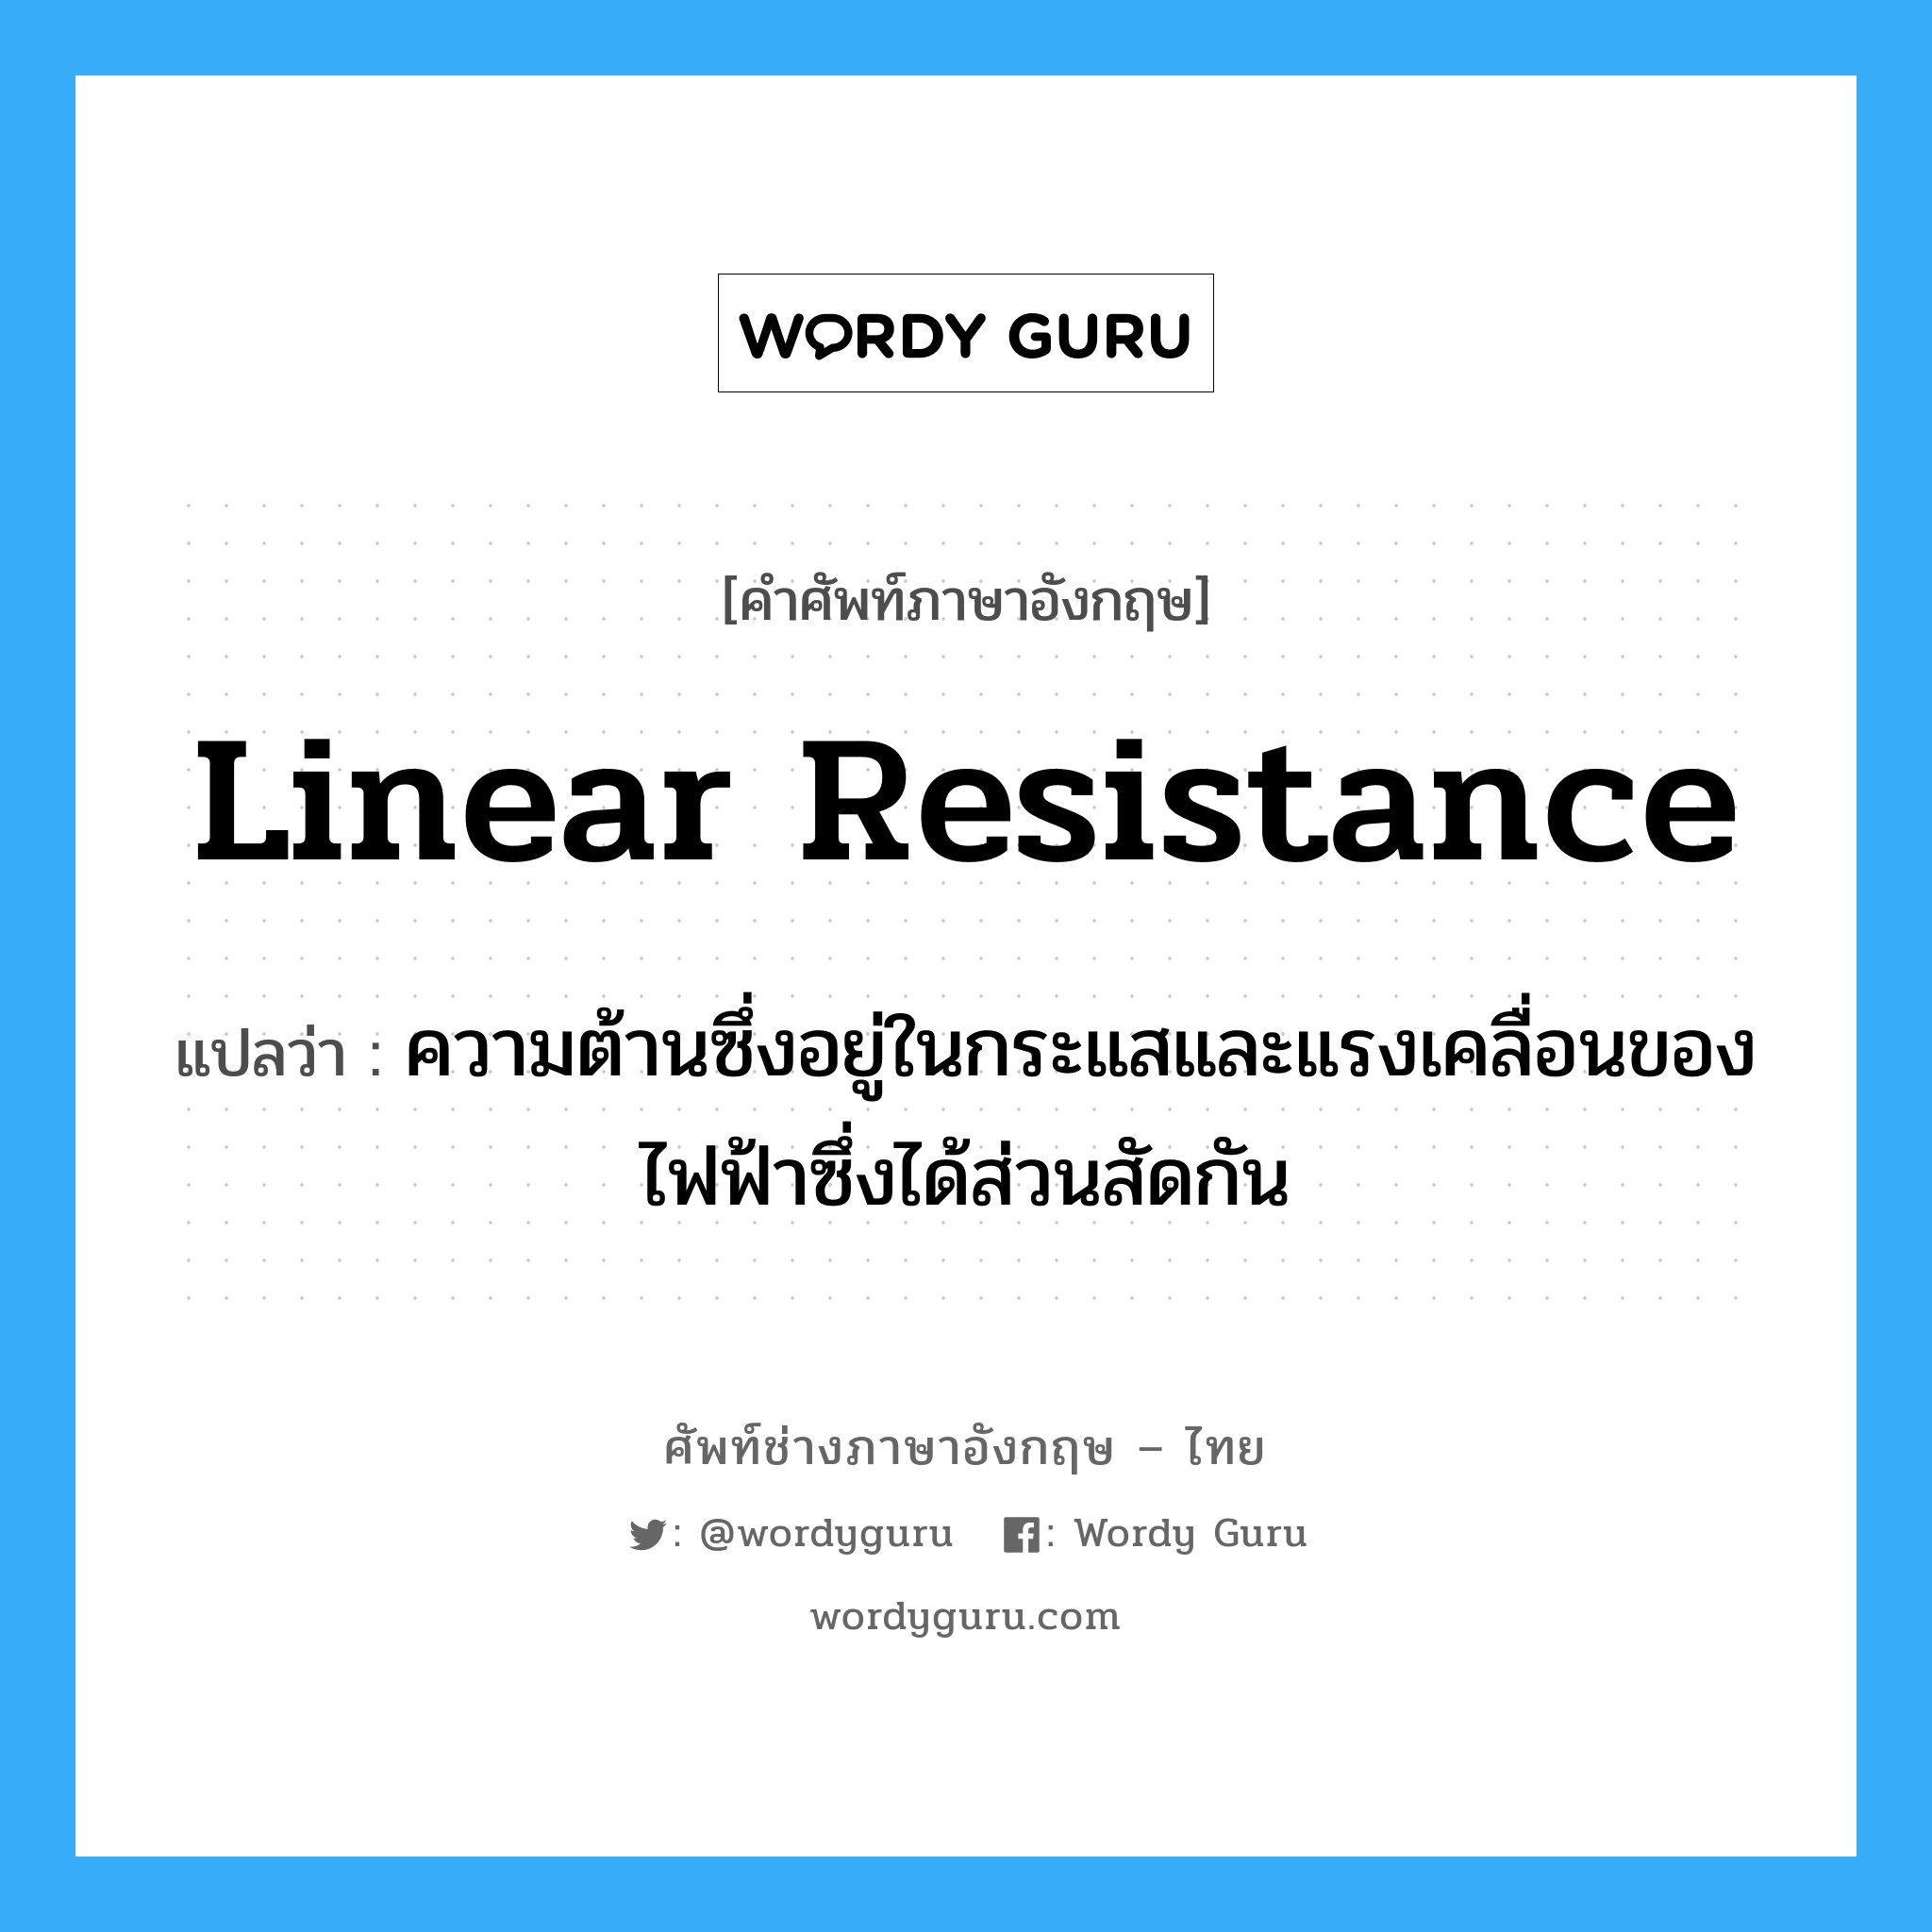 linear resistance แปลว่า?, คำศัพท์ช่างภาษาอังกฤษ - ไทย linear resistance คำศัพท์ภาษาอังกฤษ linear resistance แปลว่า ความต้านซึ่งอยู่ในกระแสและแรงเคลื่อนของไฟฟ้าซึ่งได้ส่วนสัดกัน